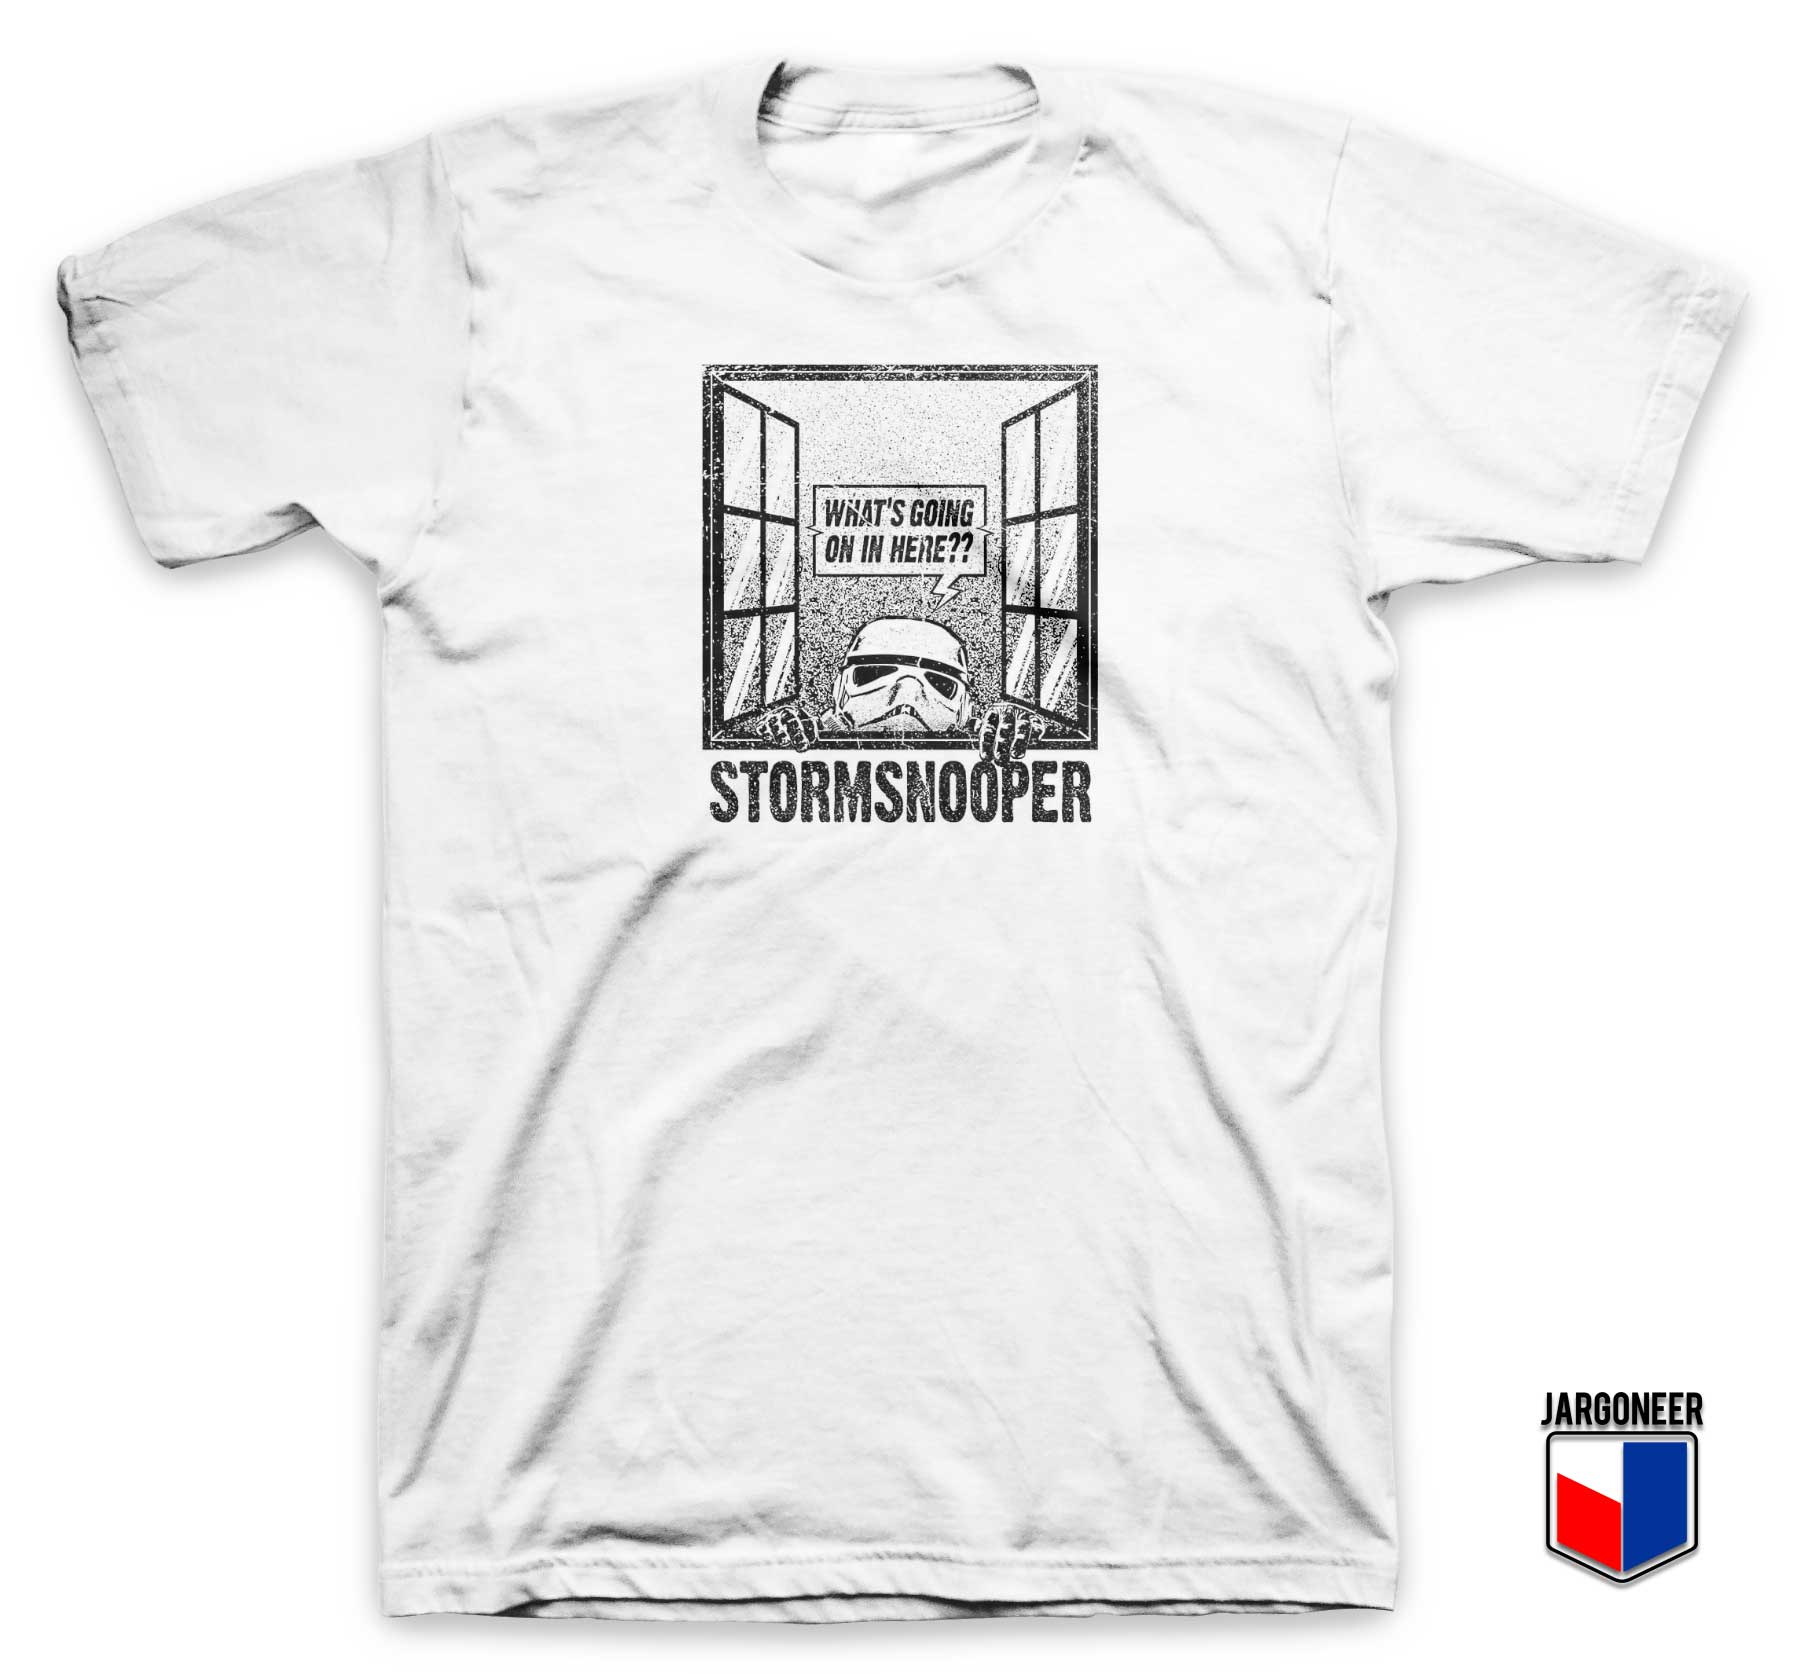 Storm Snooper Parody T Shirt - Shop Unique Graphic Cool Shirt Designs